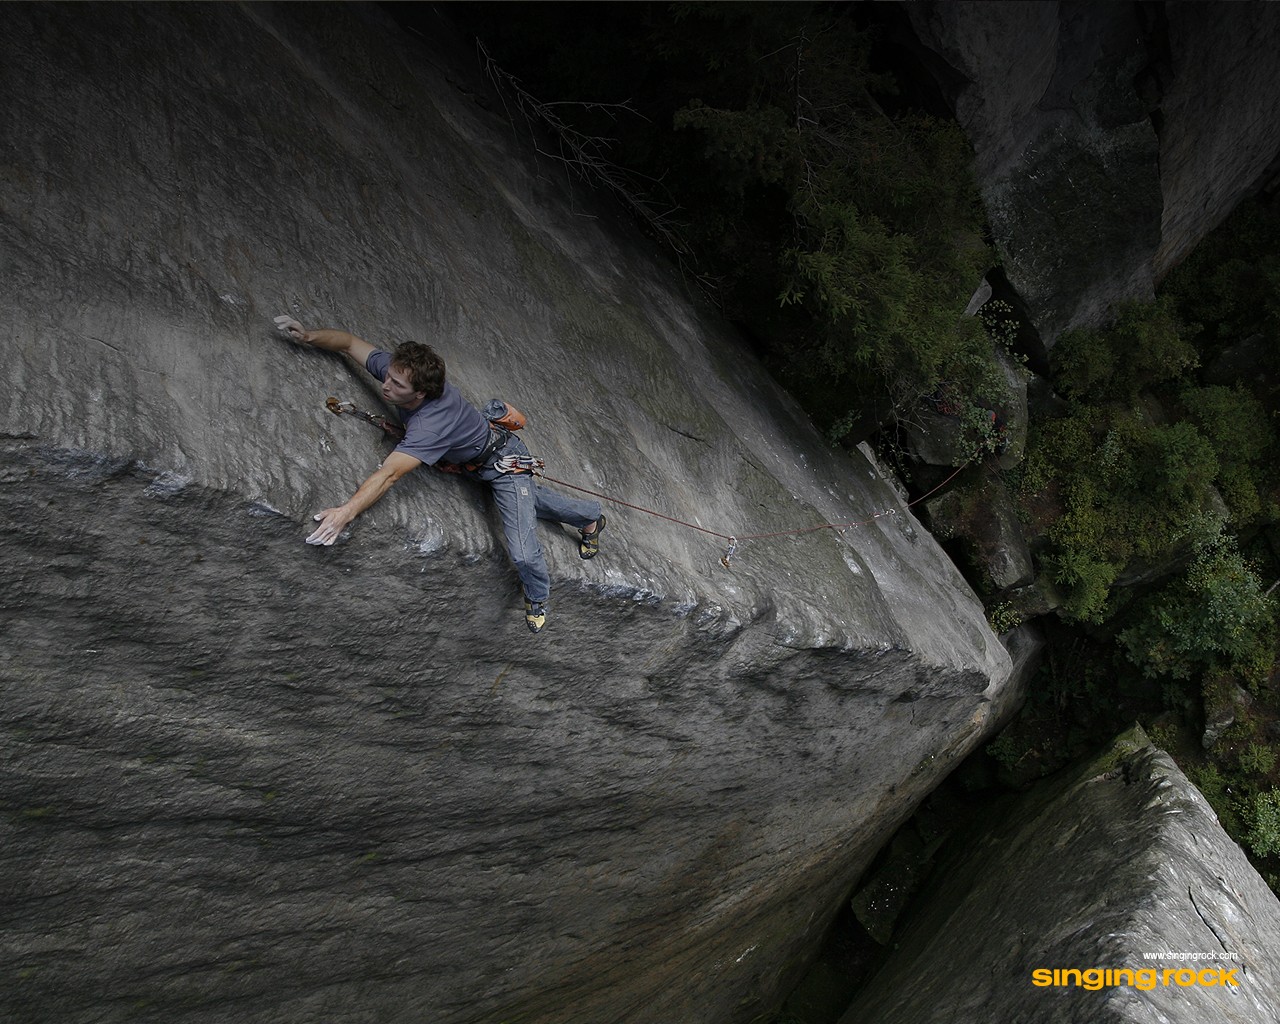 General 1280x1024 nature climbing rock climbing cliff rocks men outdoors sport